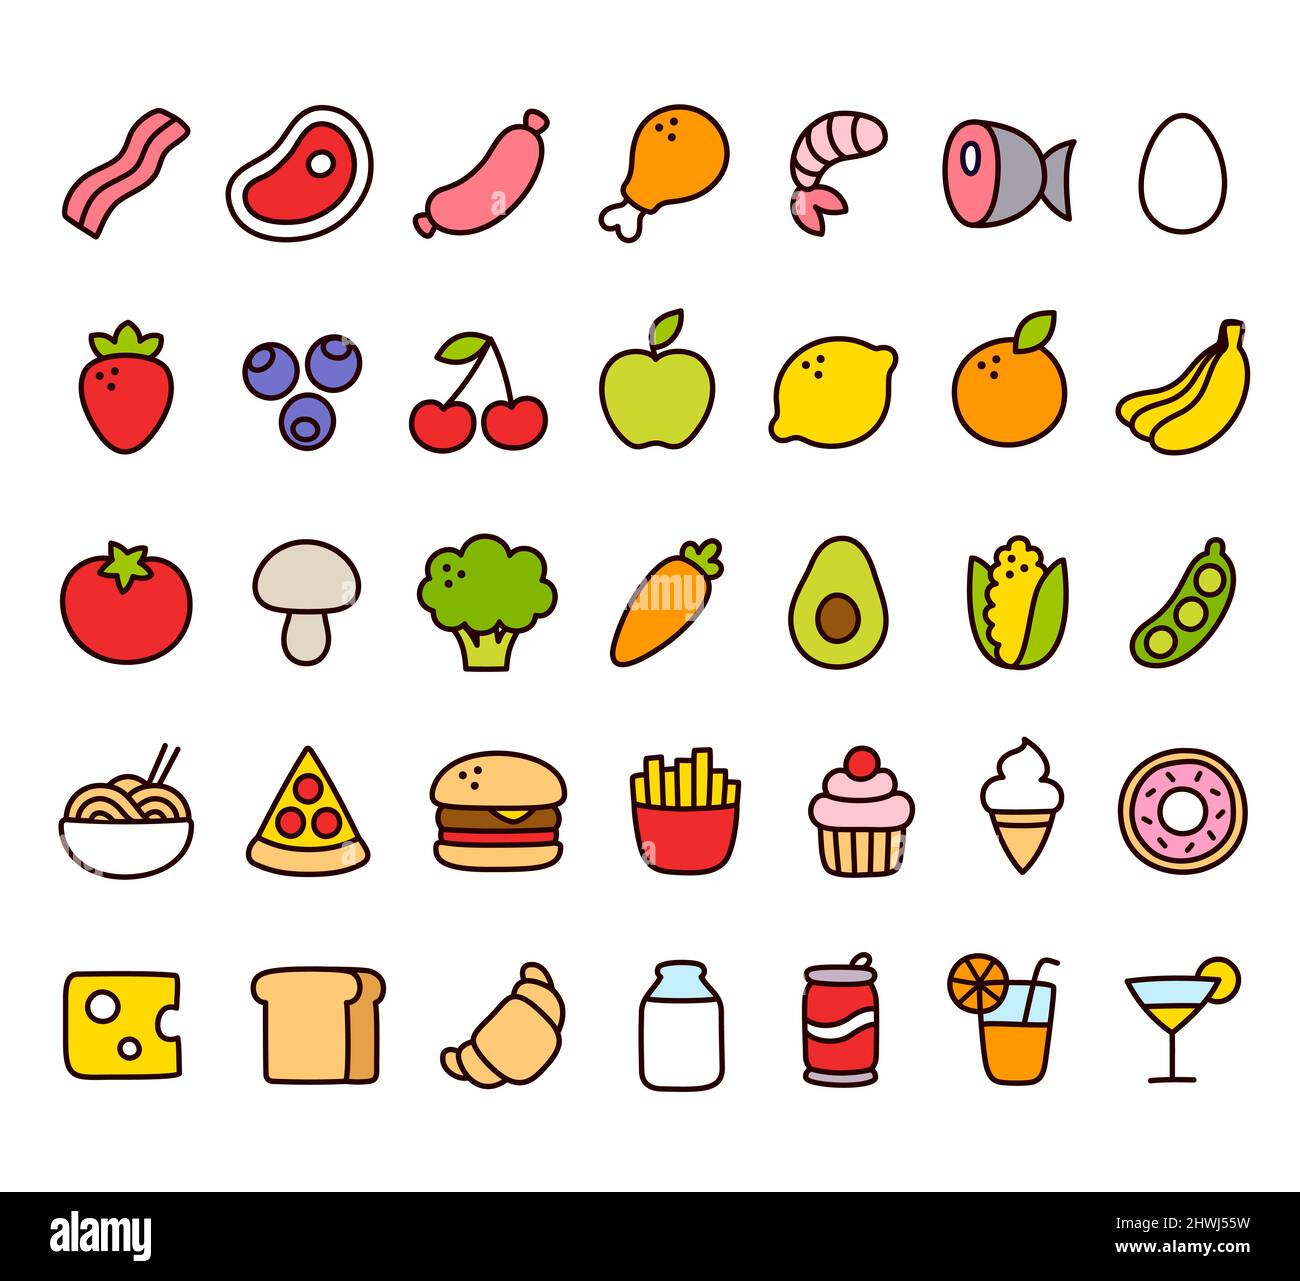 Cartoon disegnata a mano Doodle stile icone del cibo. Frutta e verdura, carne, fast food, dessert e bevande. Simpatici pittogrammi, set di illustrazioni vettoriali. Illustrazione Vettoriale